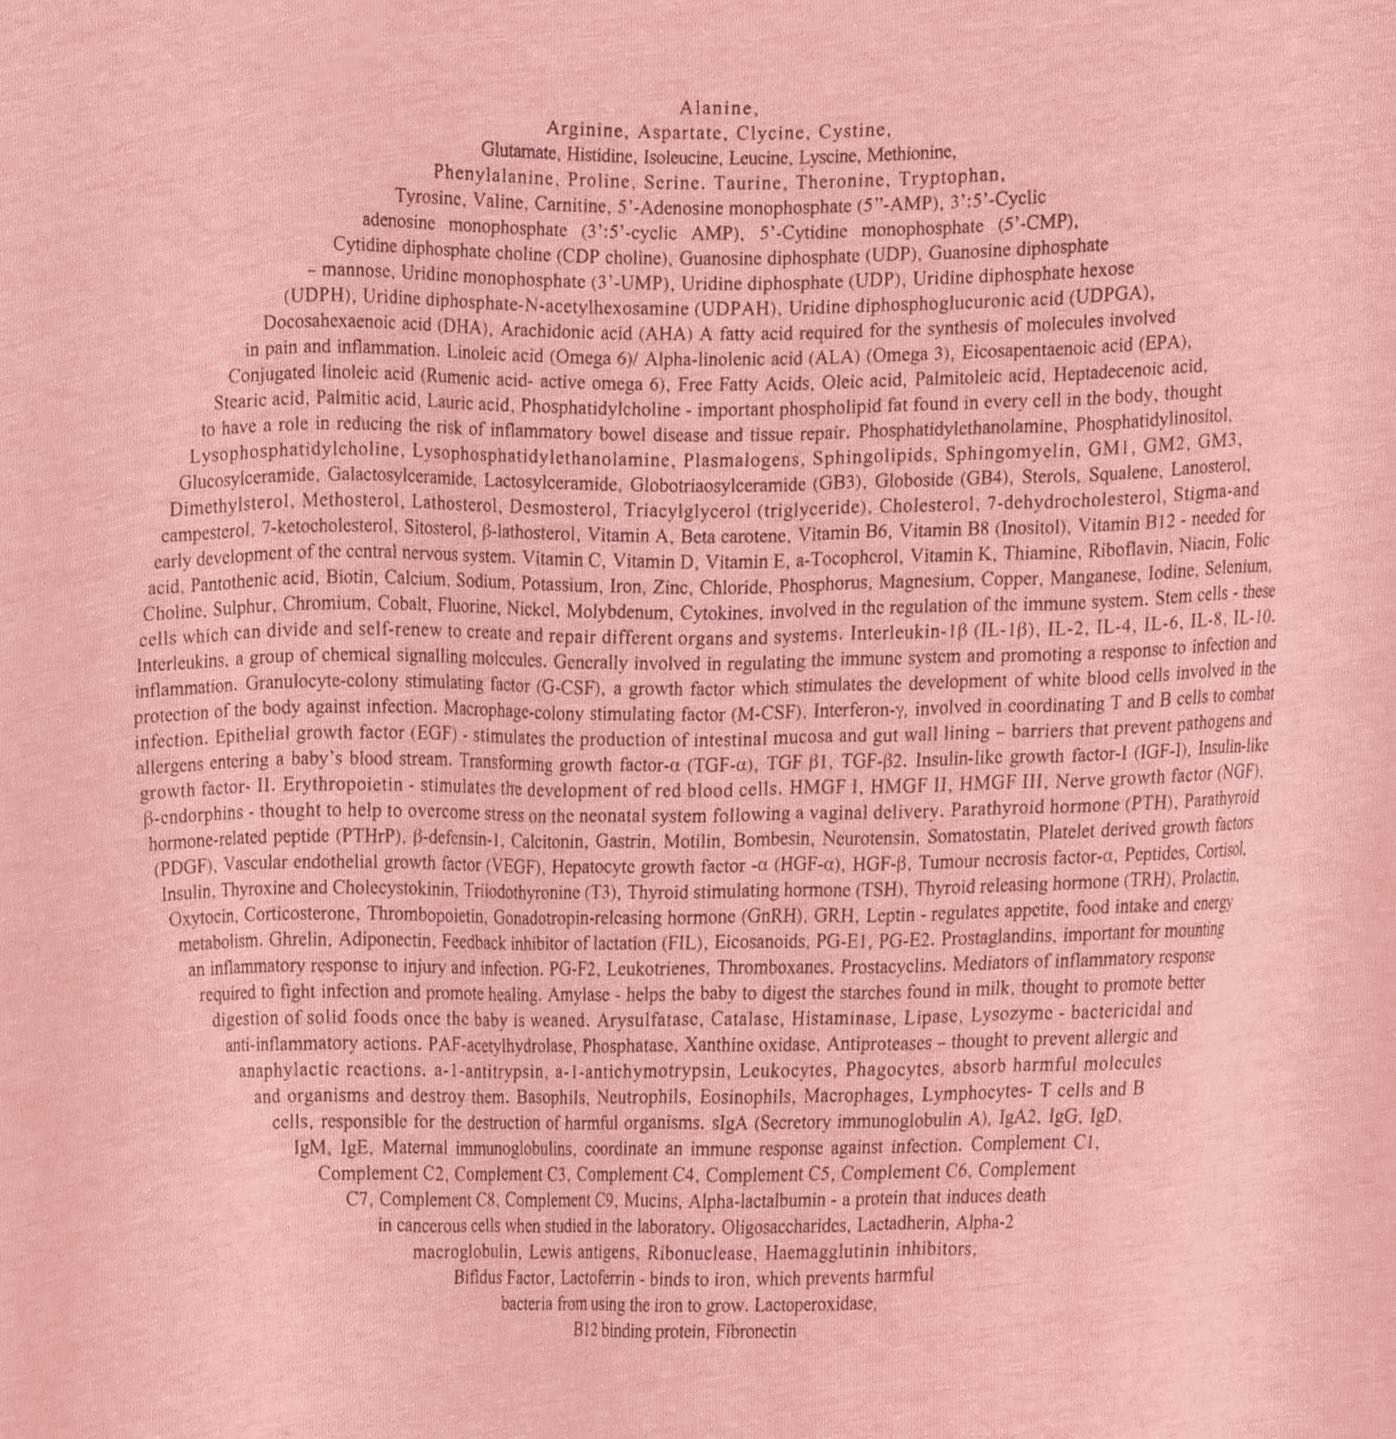 Moon T-Shirt, Canyon Pink